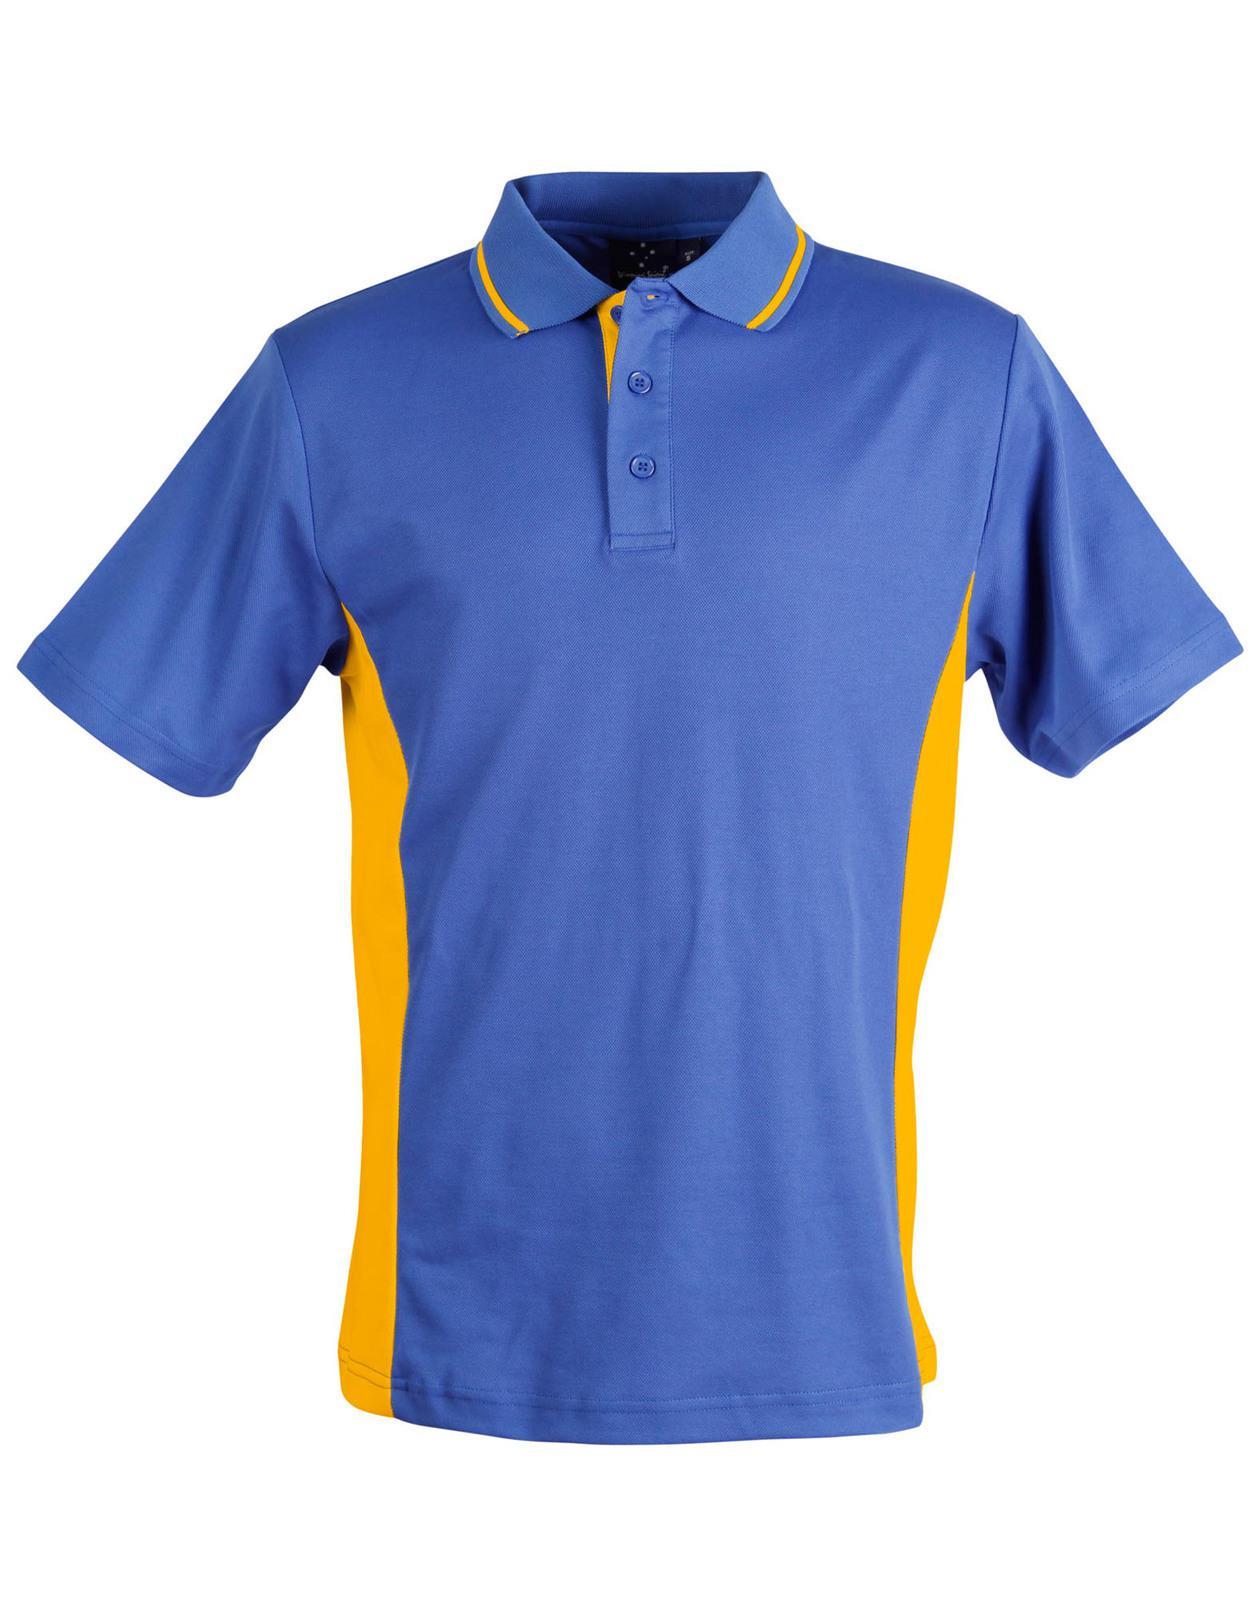 PS73K Sz 06K TEAMMATE Cotton Polyester Kids Polo Shirt Royal Blue/Gold